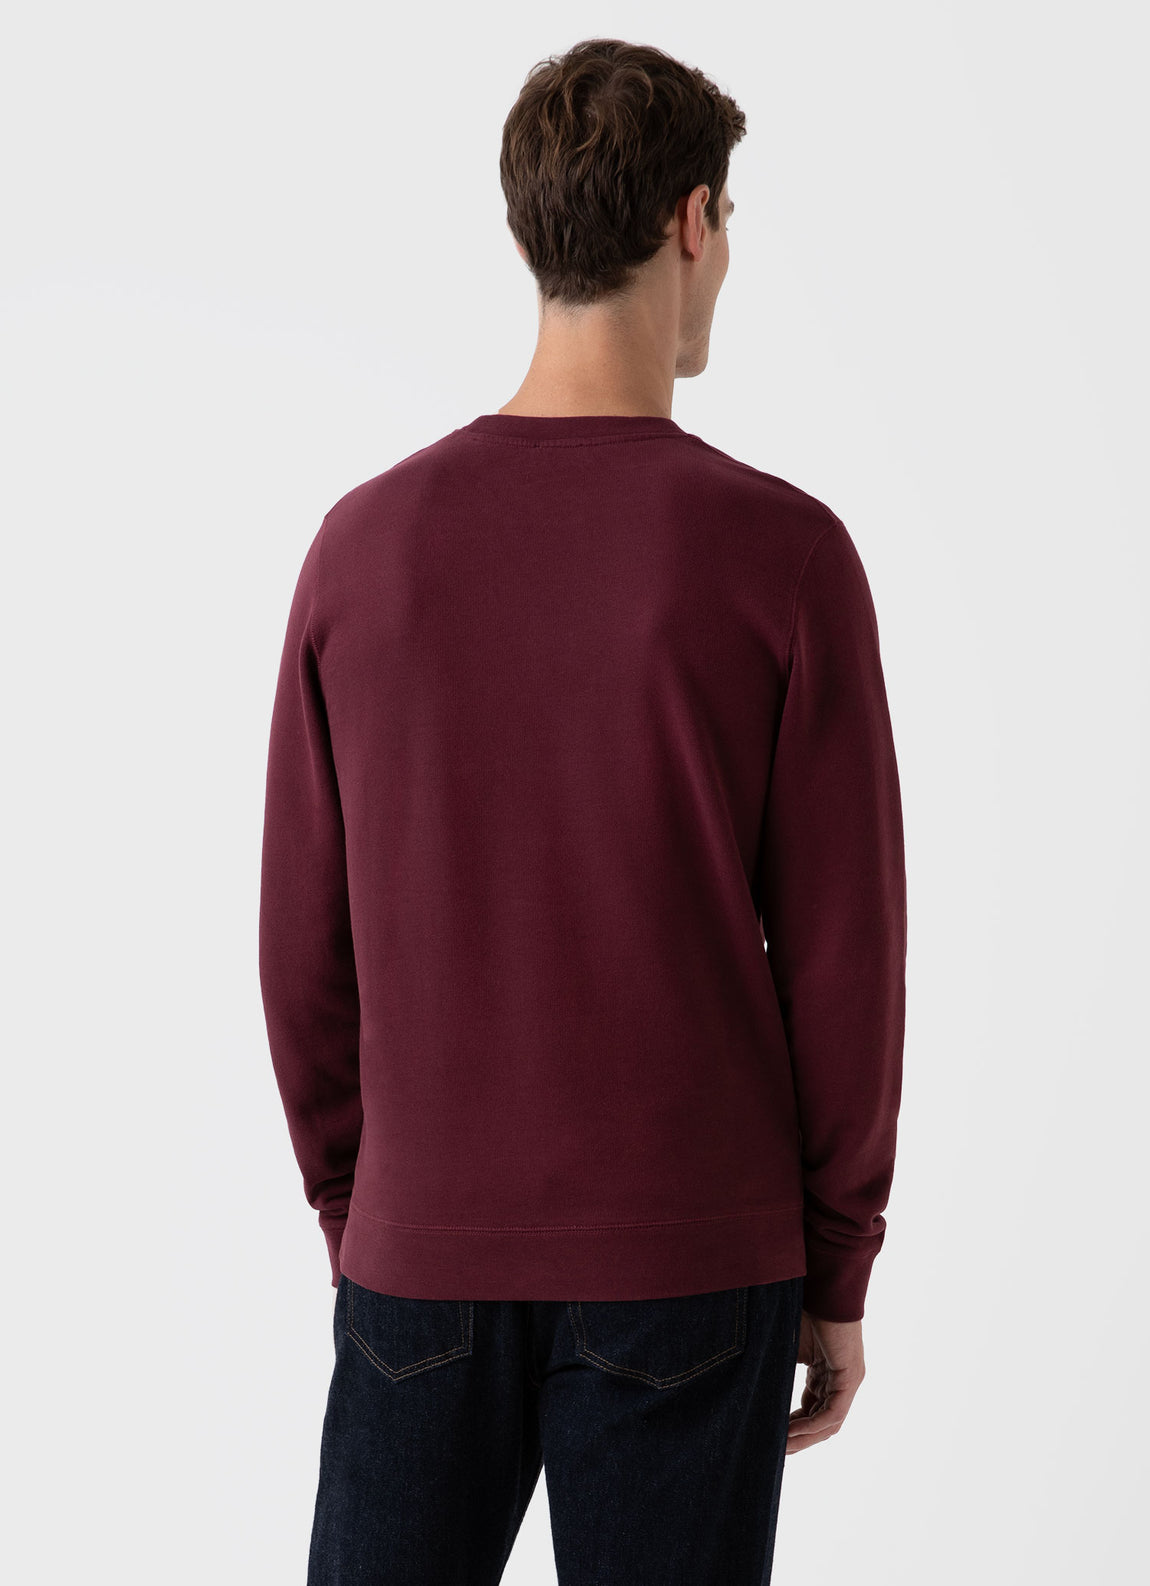 Men's Loopback Sweatshirt in Vino